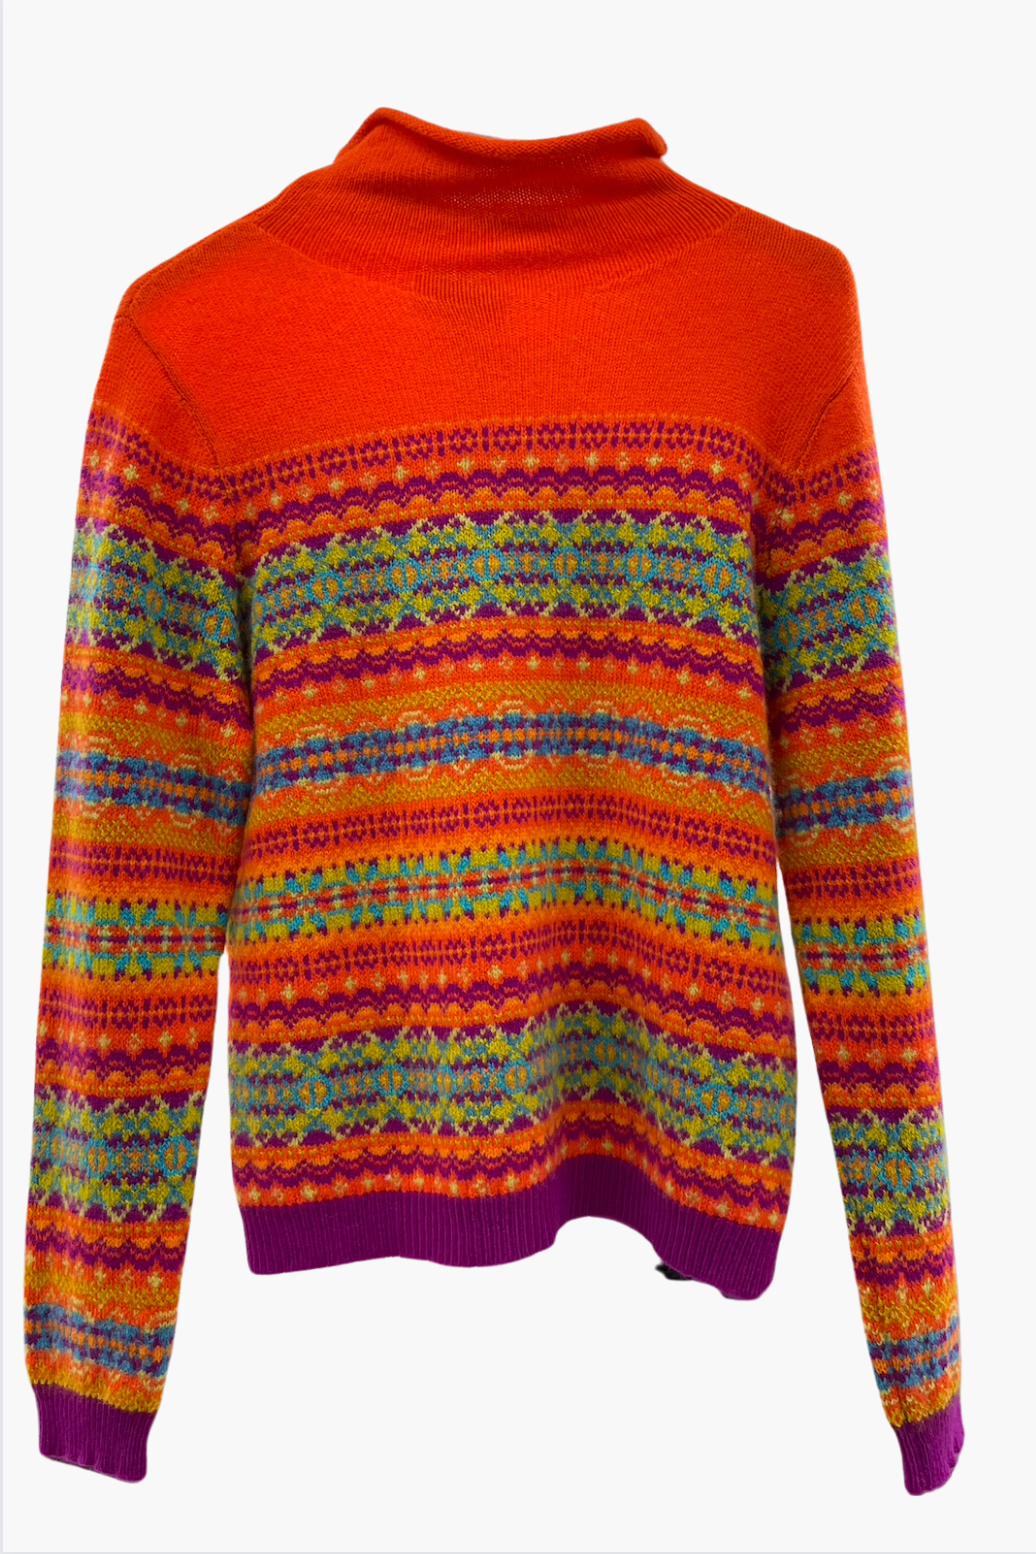 Eribe Knitwear Kinross High Neck Sweater in Beltnae